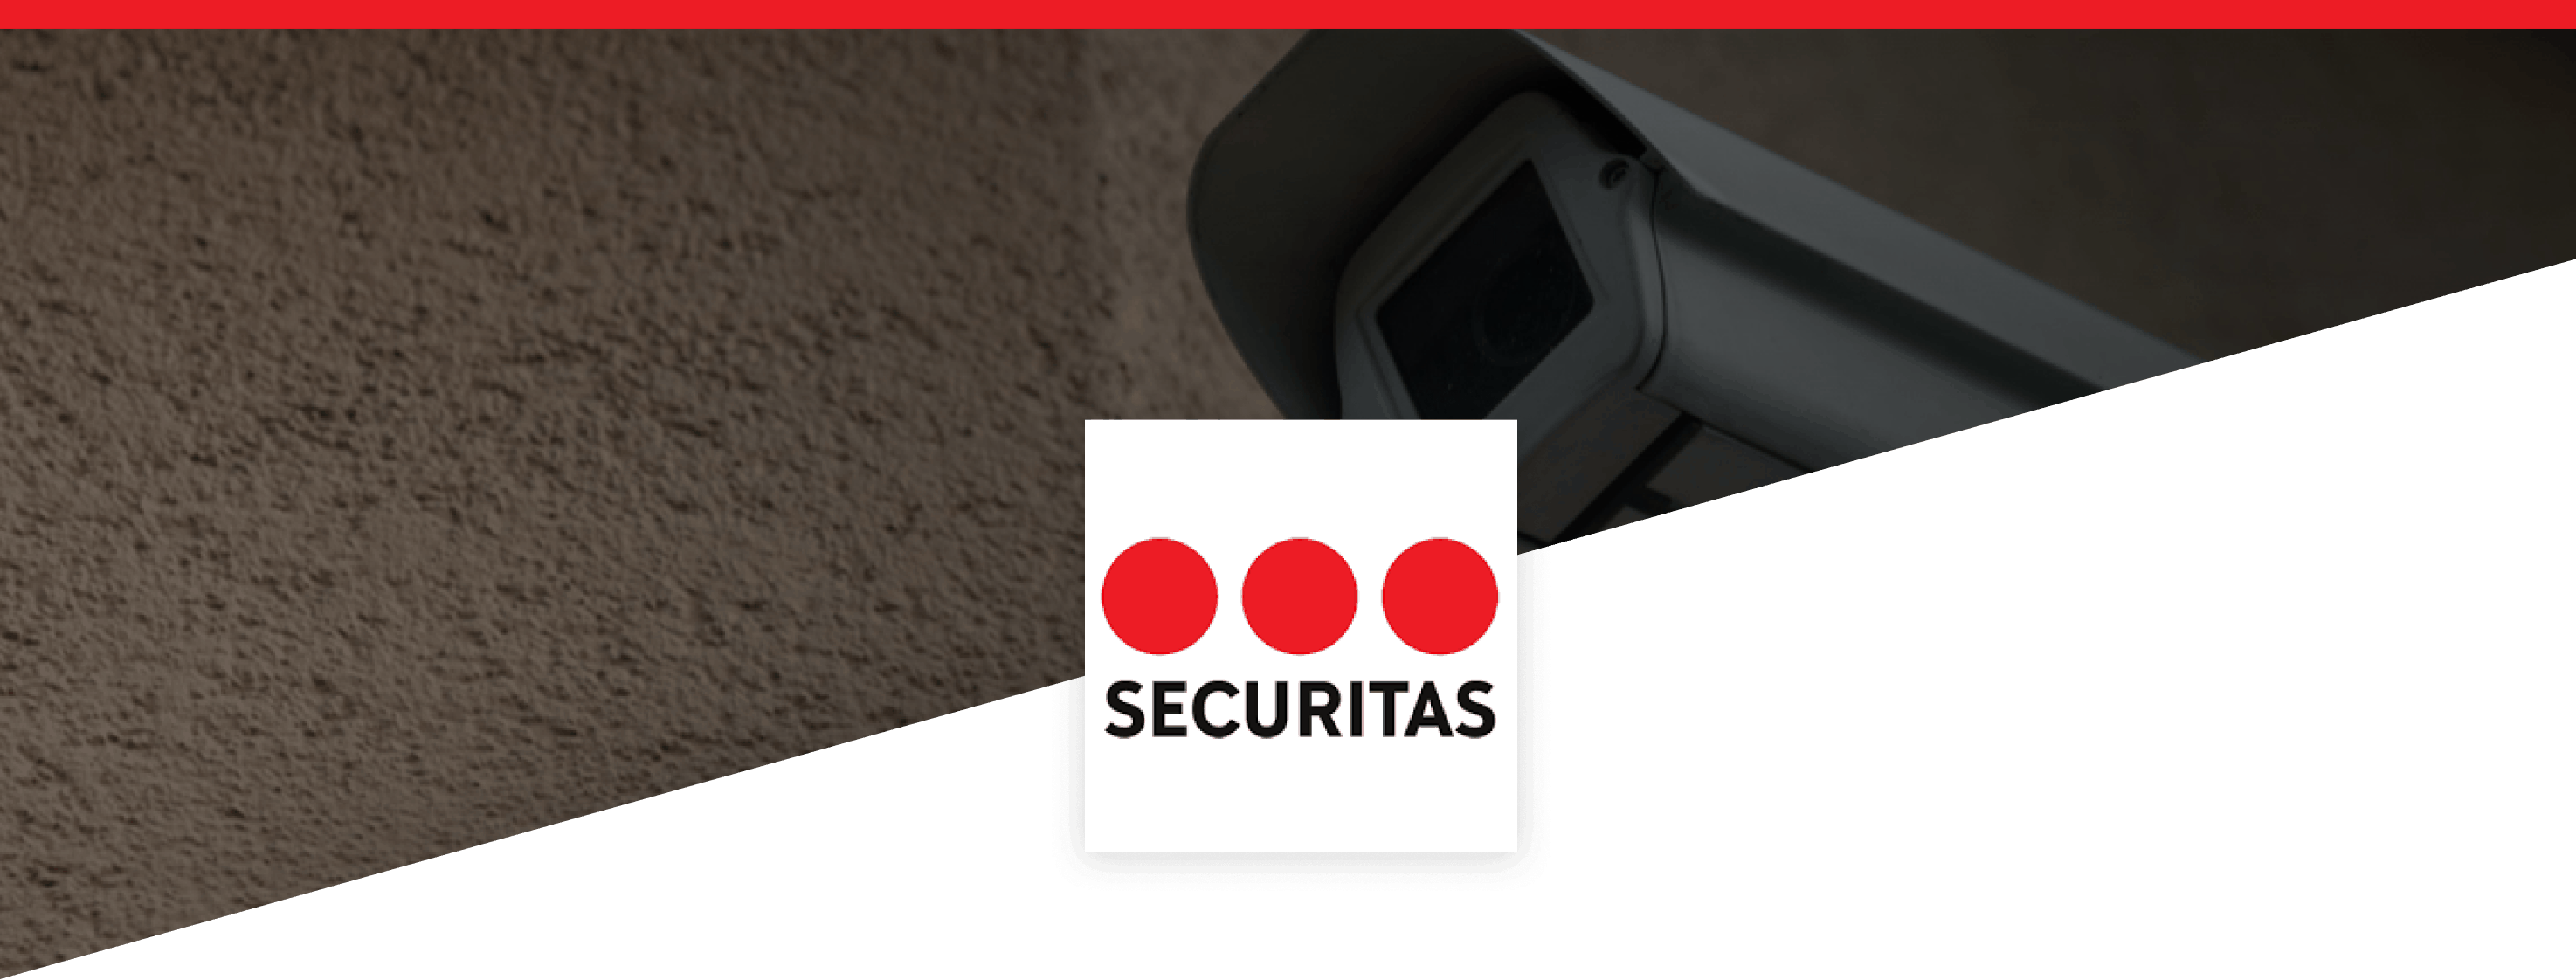 Securitas caméra de sécurité ineat